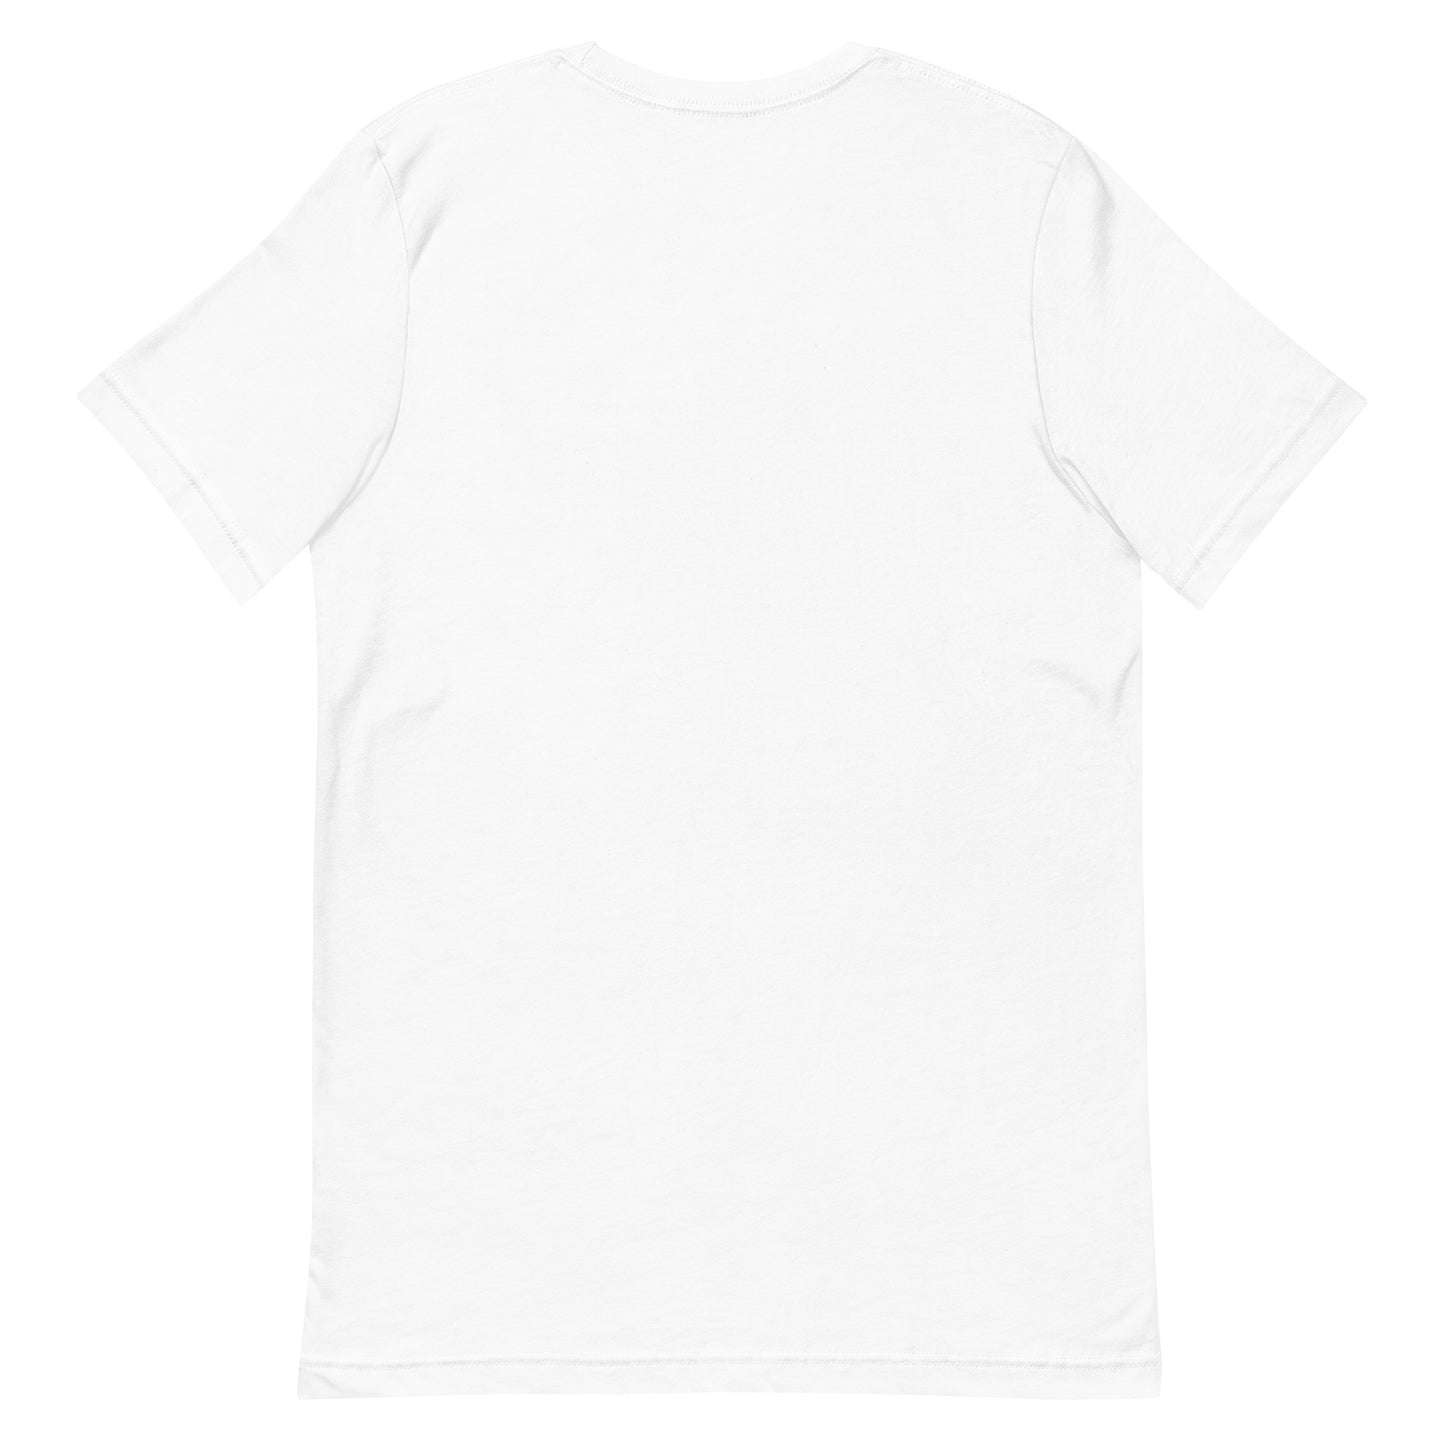 Unisex t-shirt "32 SHIKI KOMATA" White